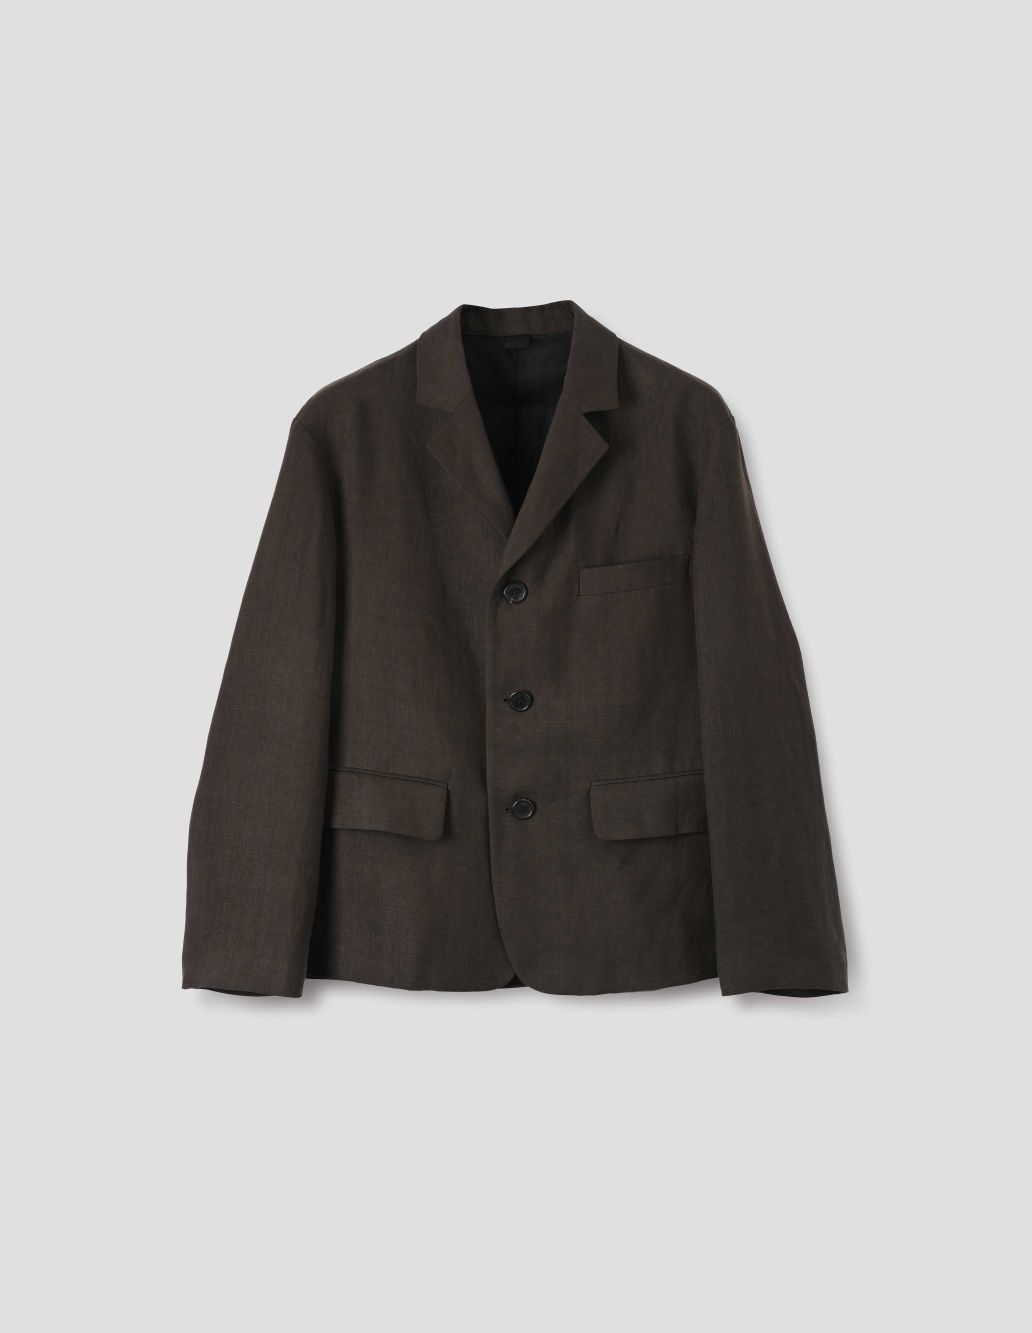 MARGARET HOWELL - Dark brown compact linen twill boxy blazer | Margaret ...